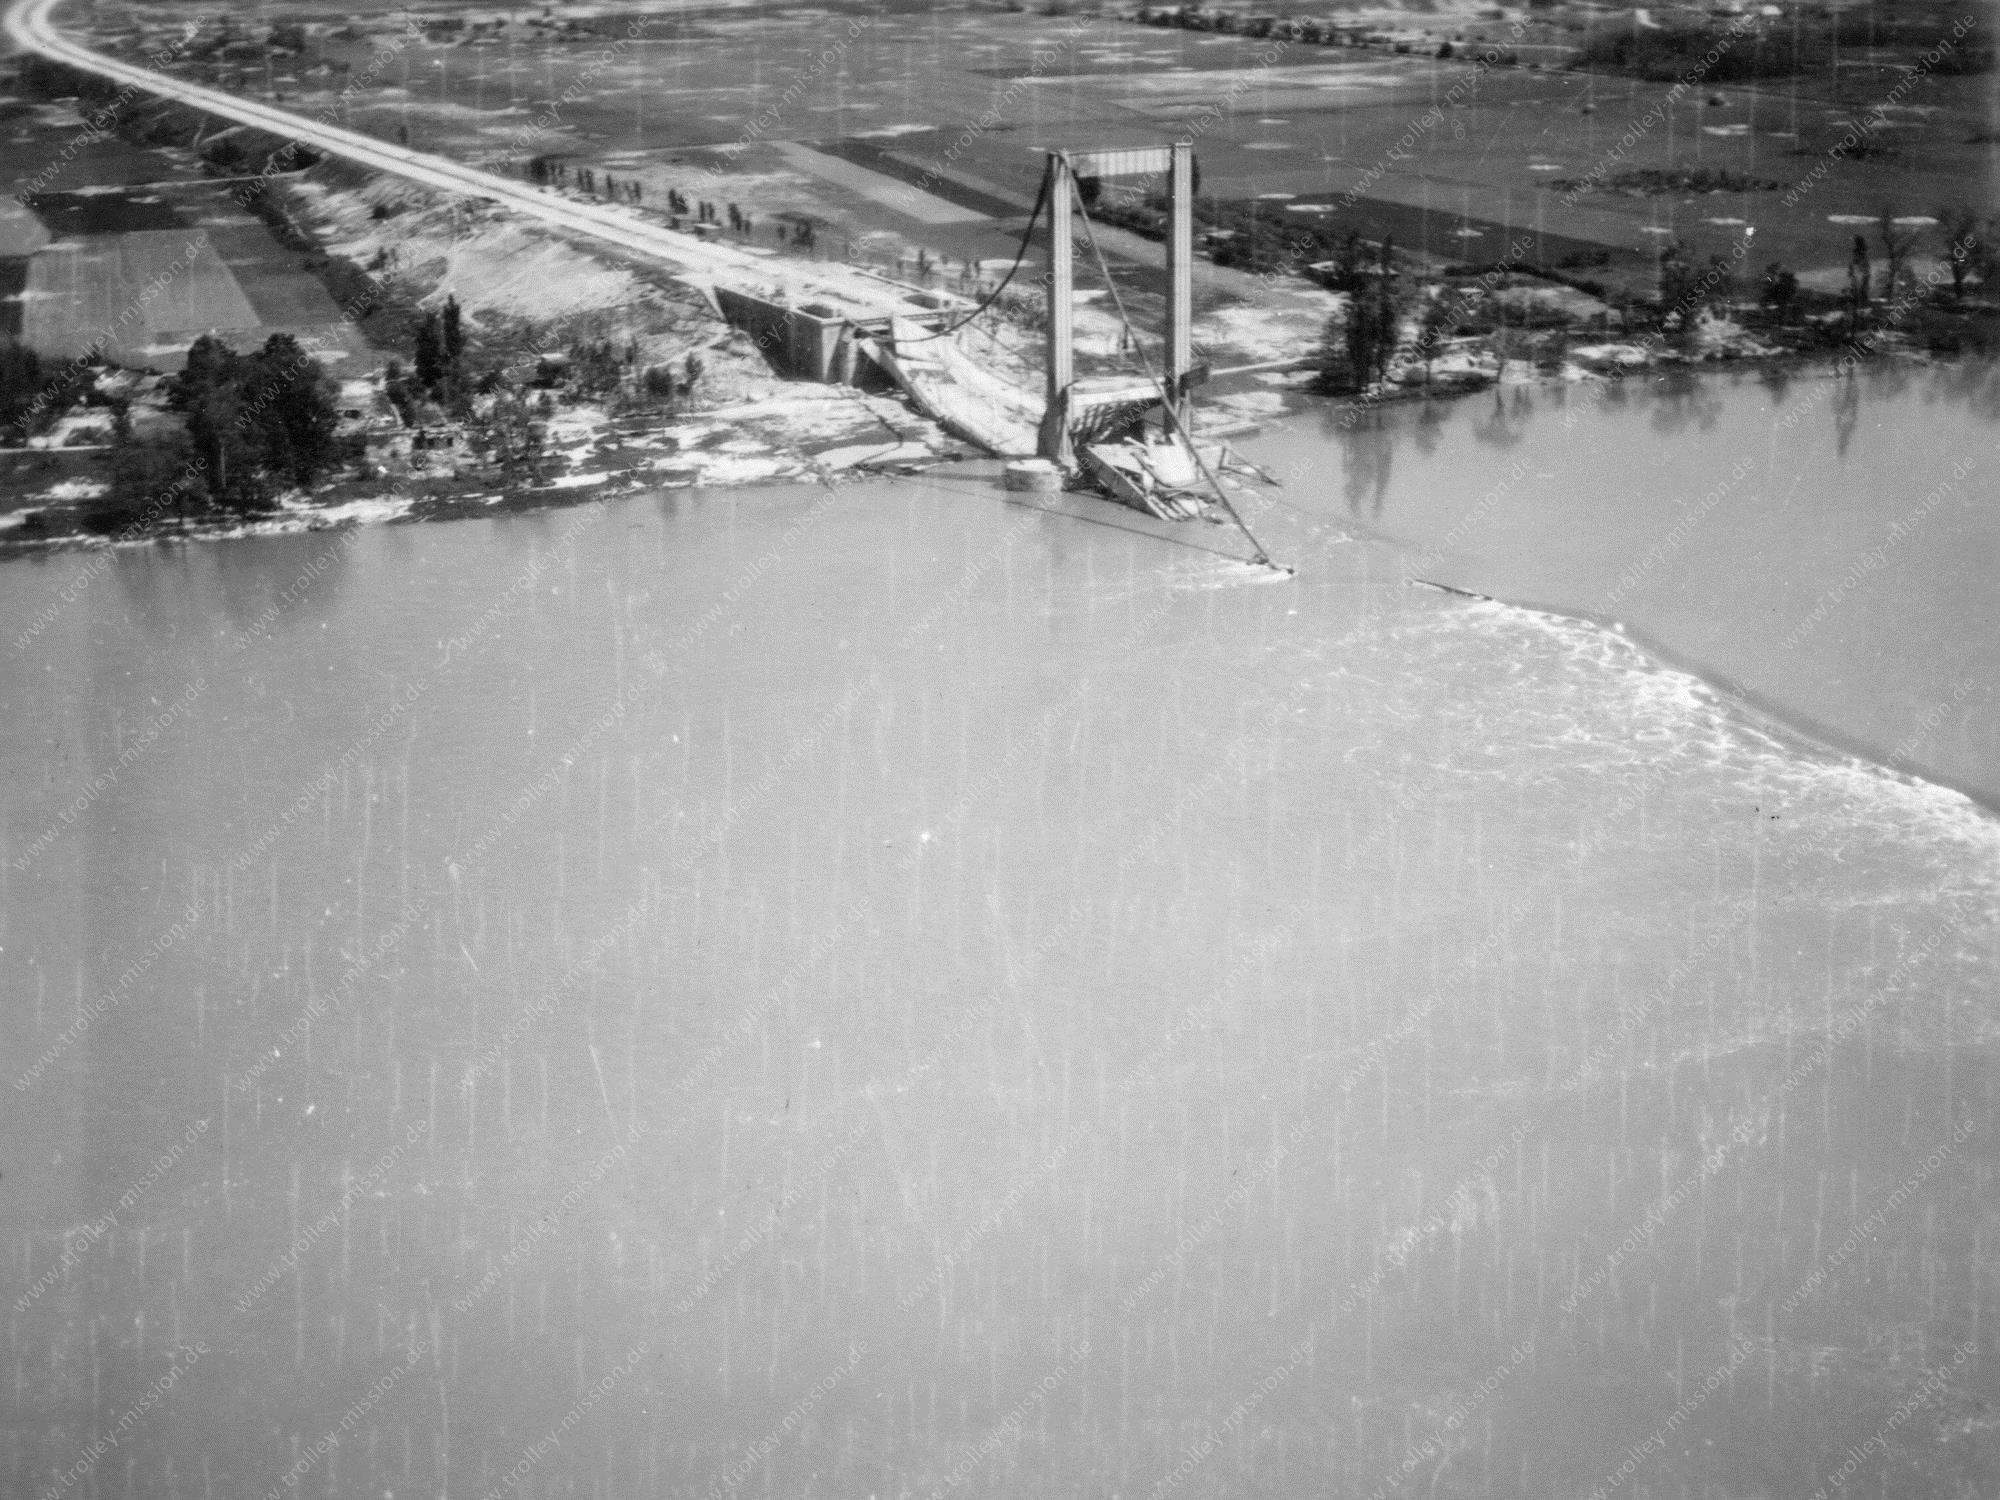 Autobahnbrücke in Köln-Rodenkirchen - Luftbild der Trolley Mission 1945